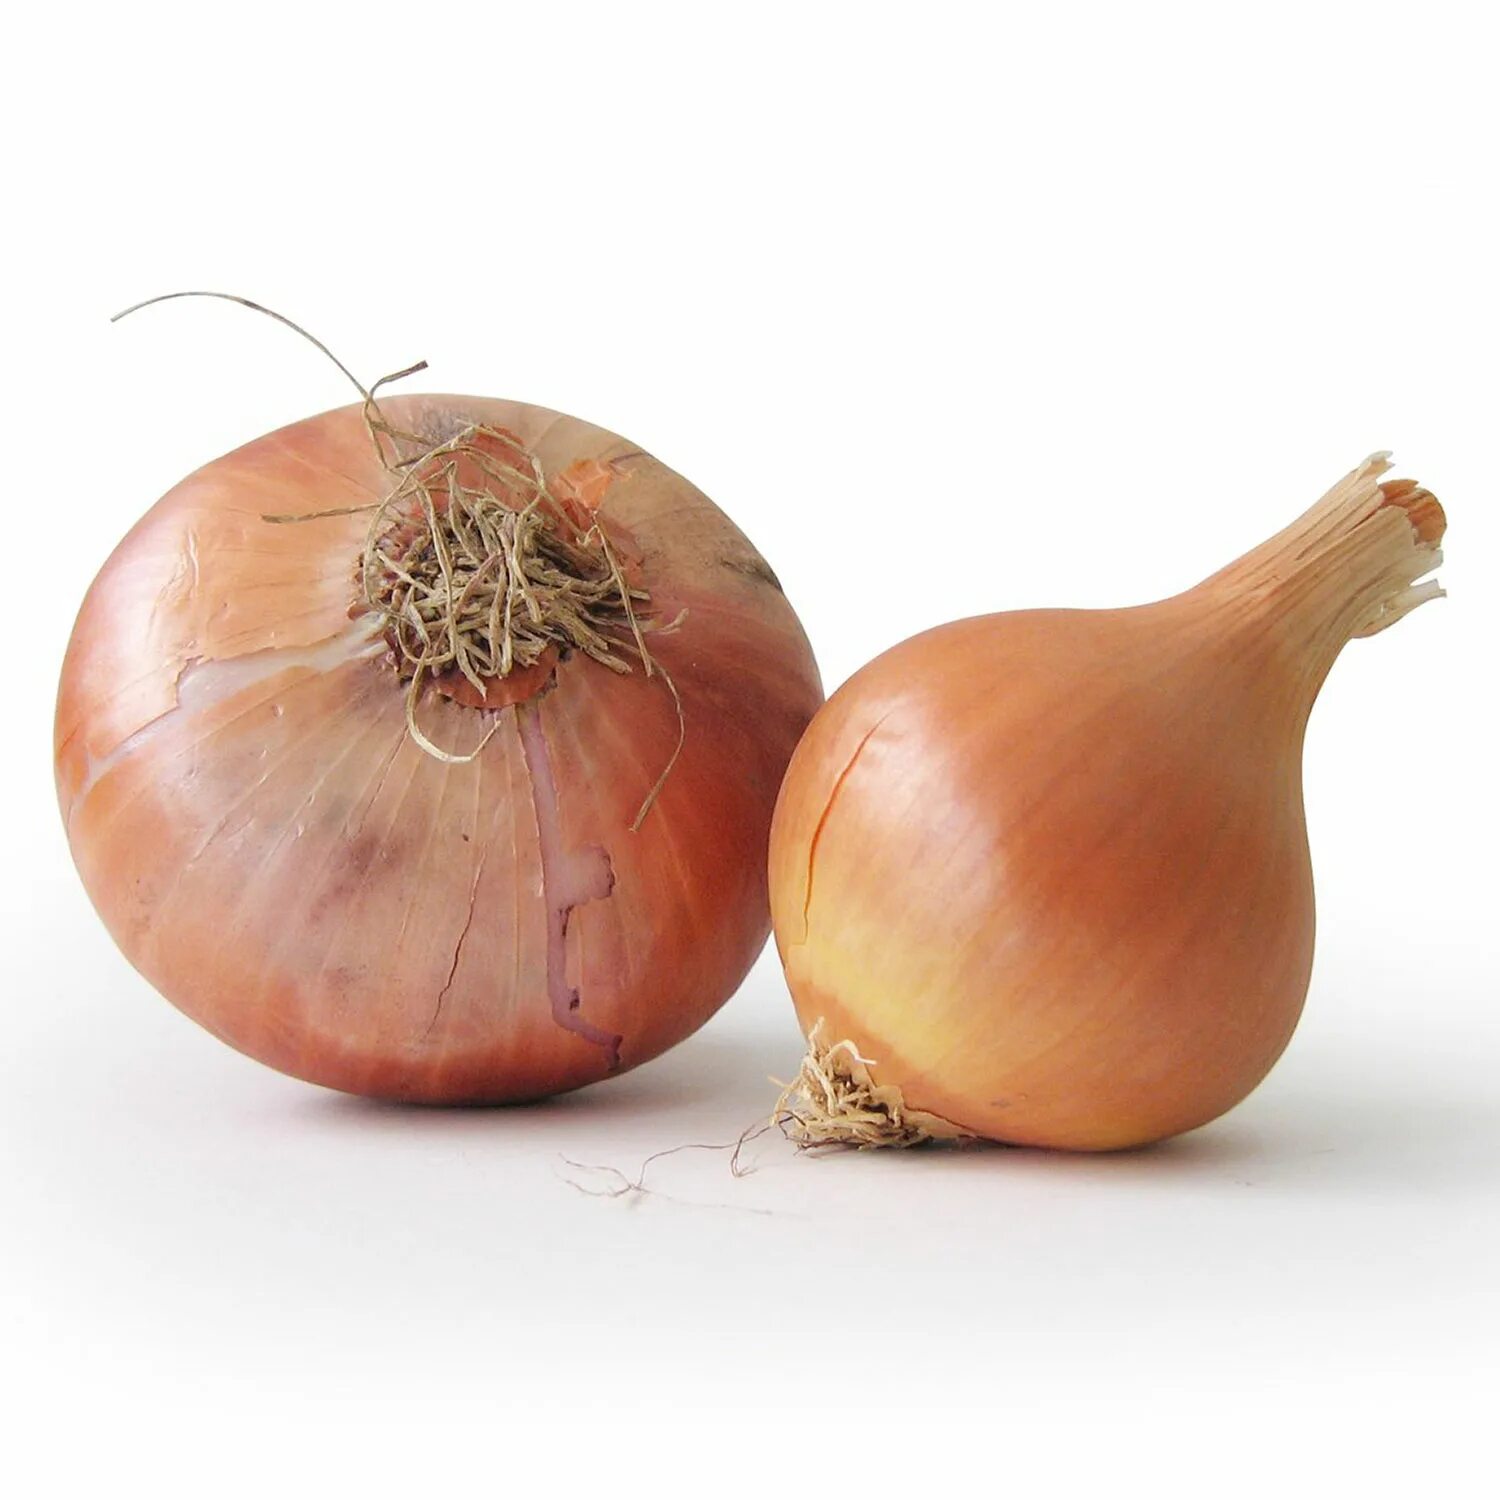 Mixed onion. Лук репчатый. Лук на белом фоне. Луковица. Лук репчатый на белом фоне.